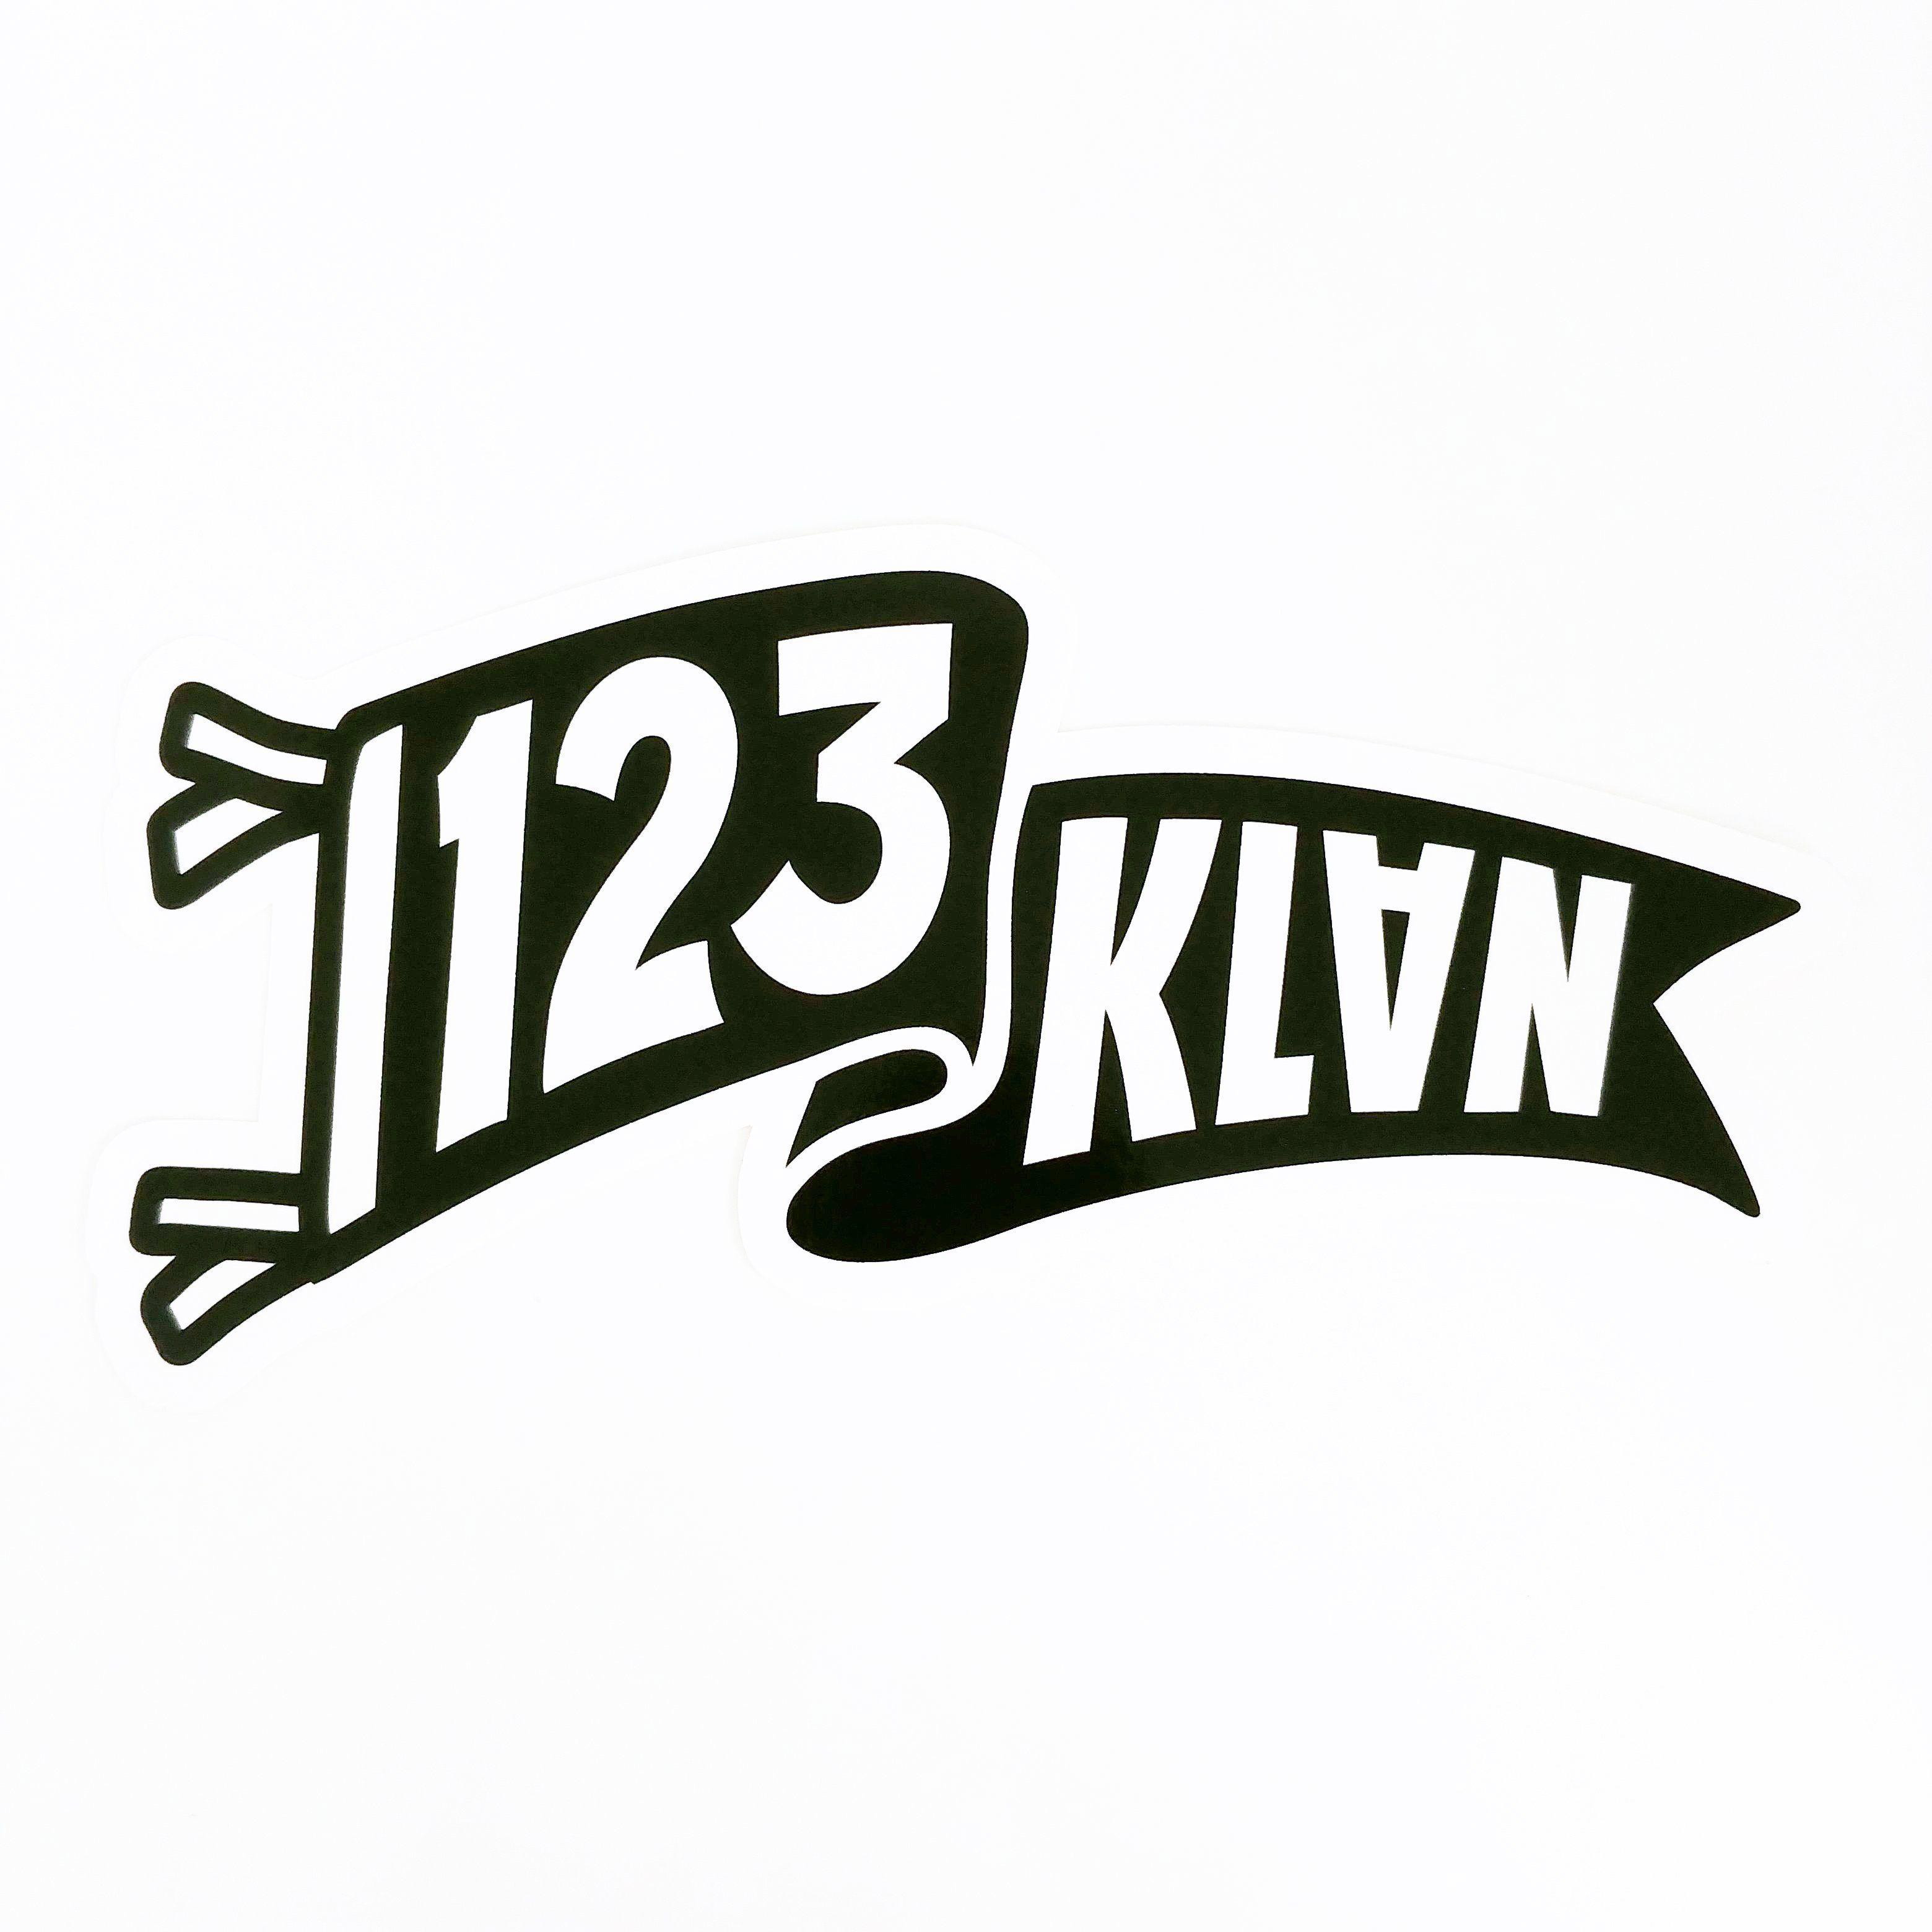 Banner Logo - 123Klan banner logo Graffiti Sticker by bandit1sm – 123KLAN